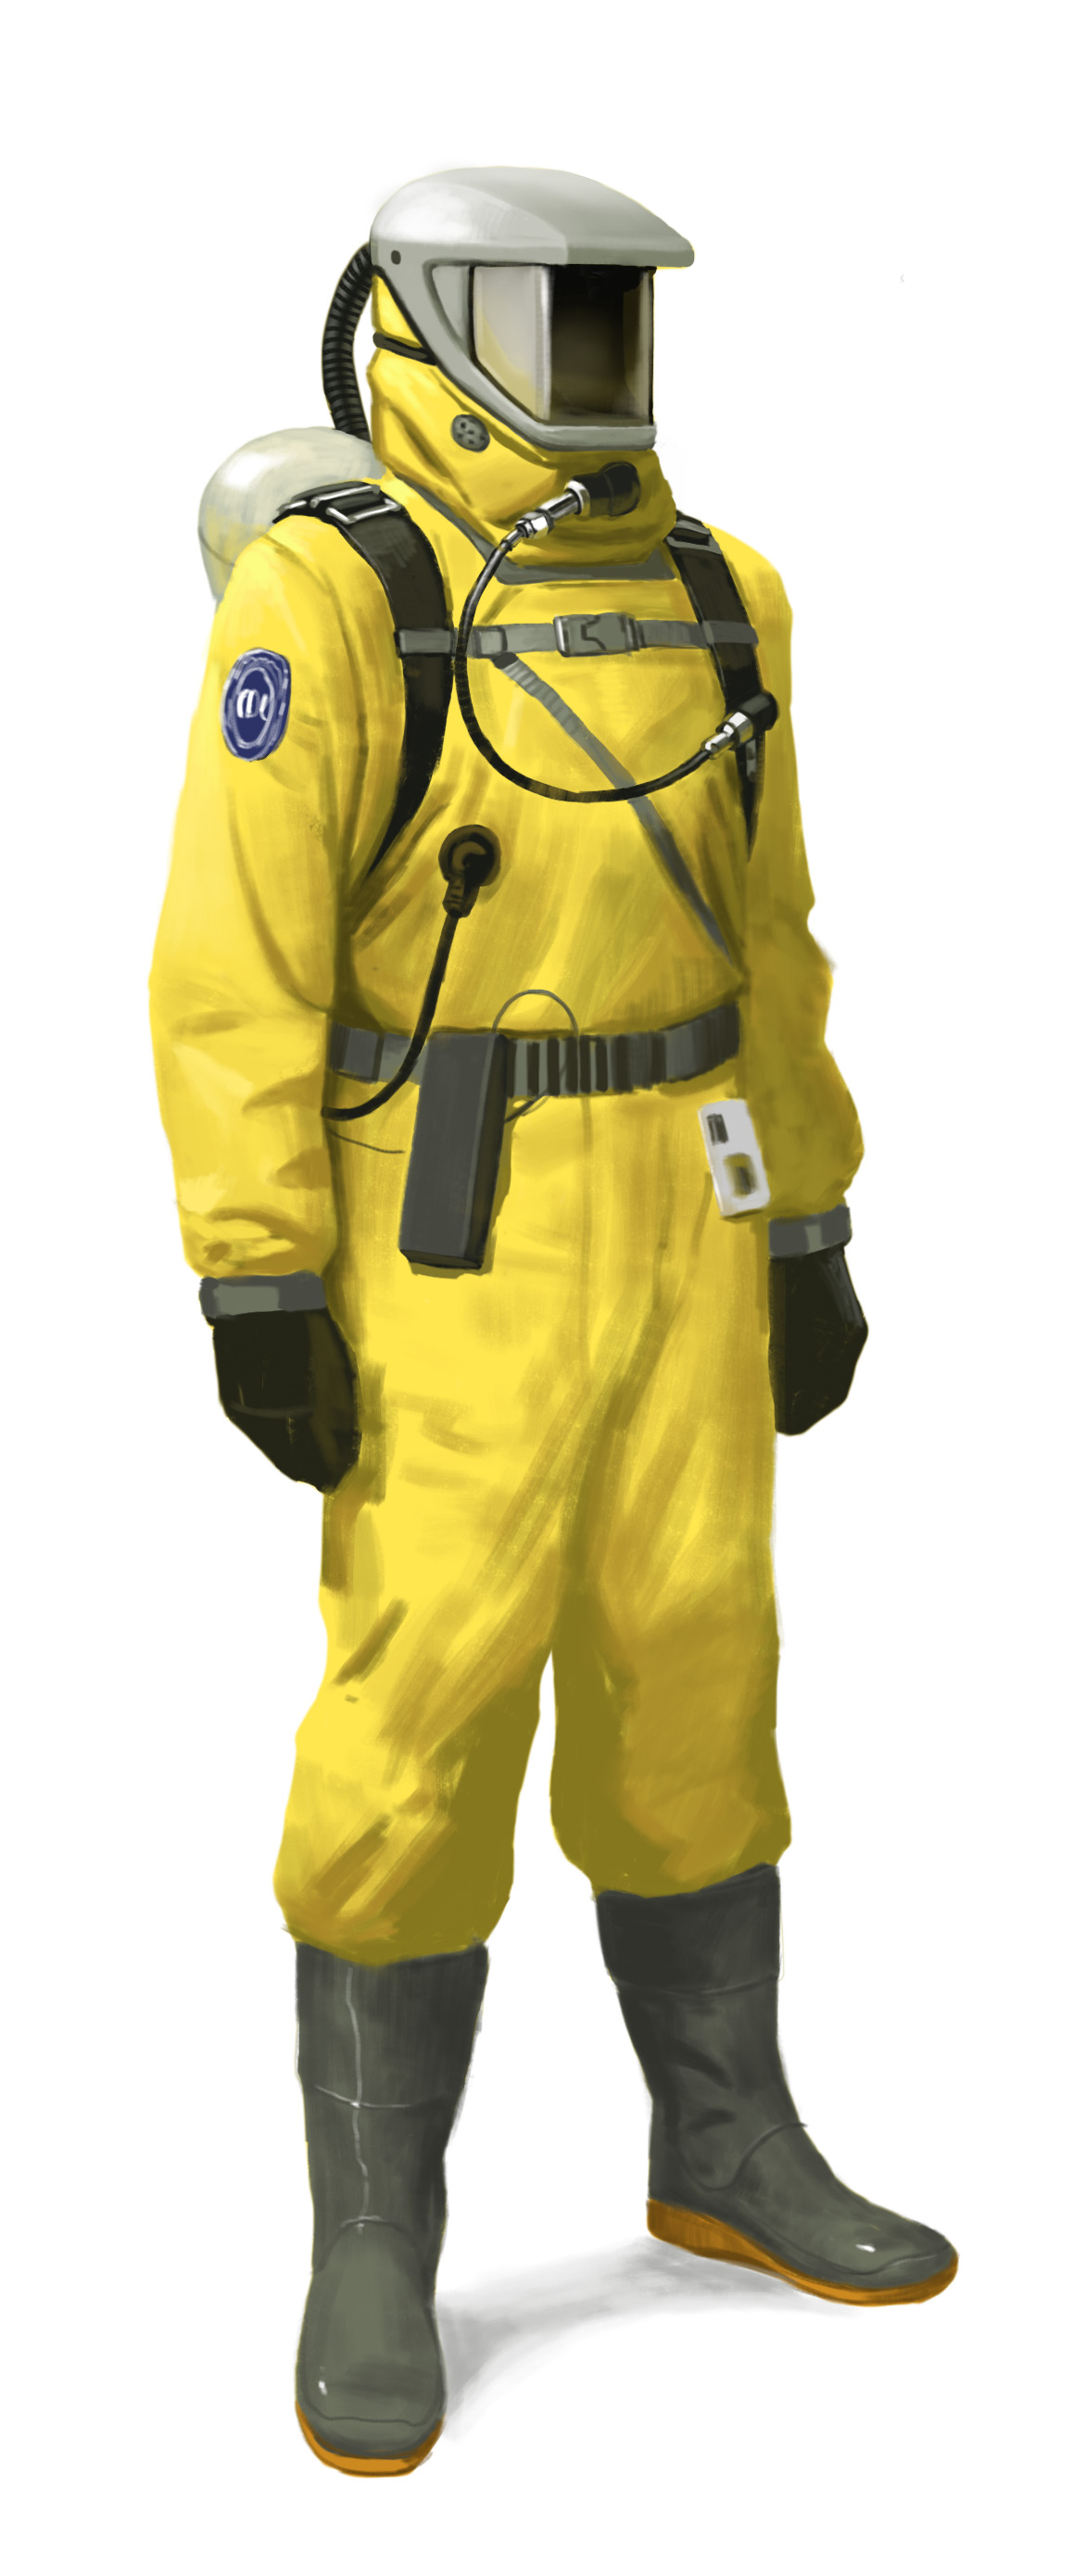 Костюм радиационной защиты. Костюм химзащиты CDC арт. Радиационно защитный костюм РЗК. Защитный костюм от радиации арт. Hazmat Suit арт.